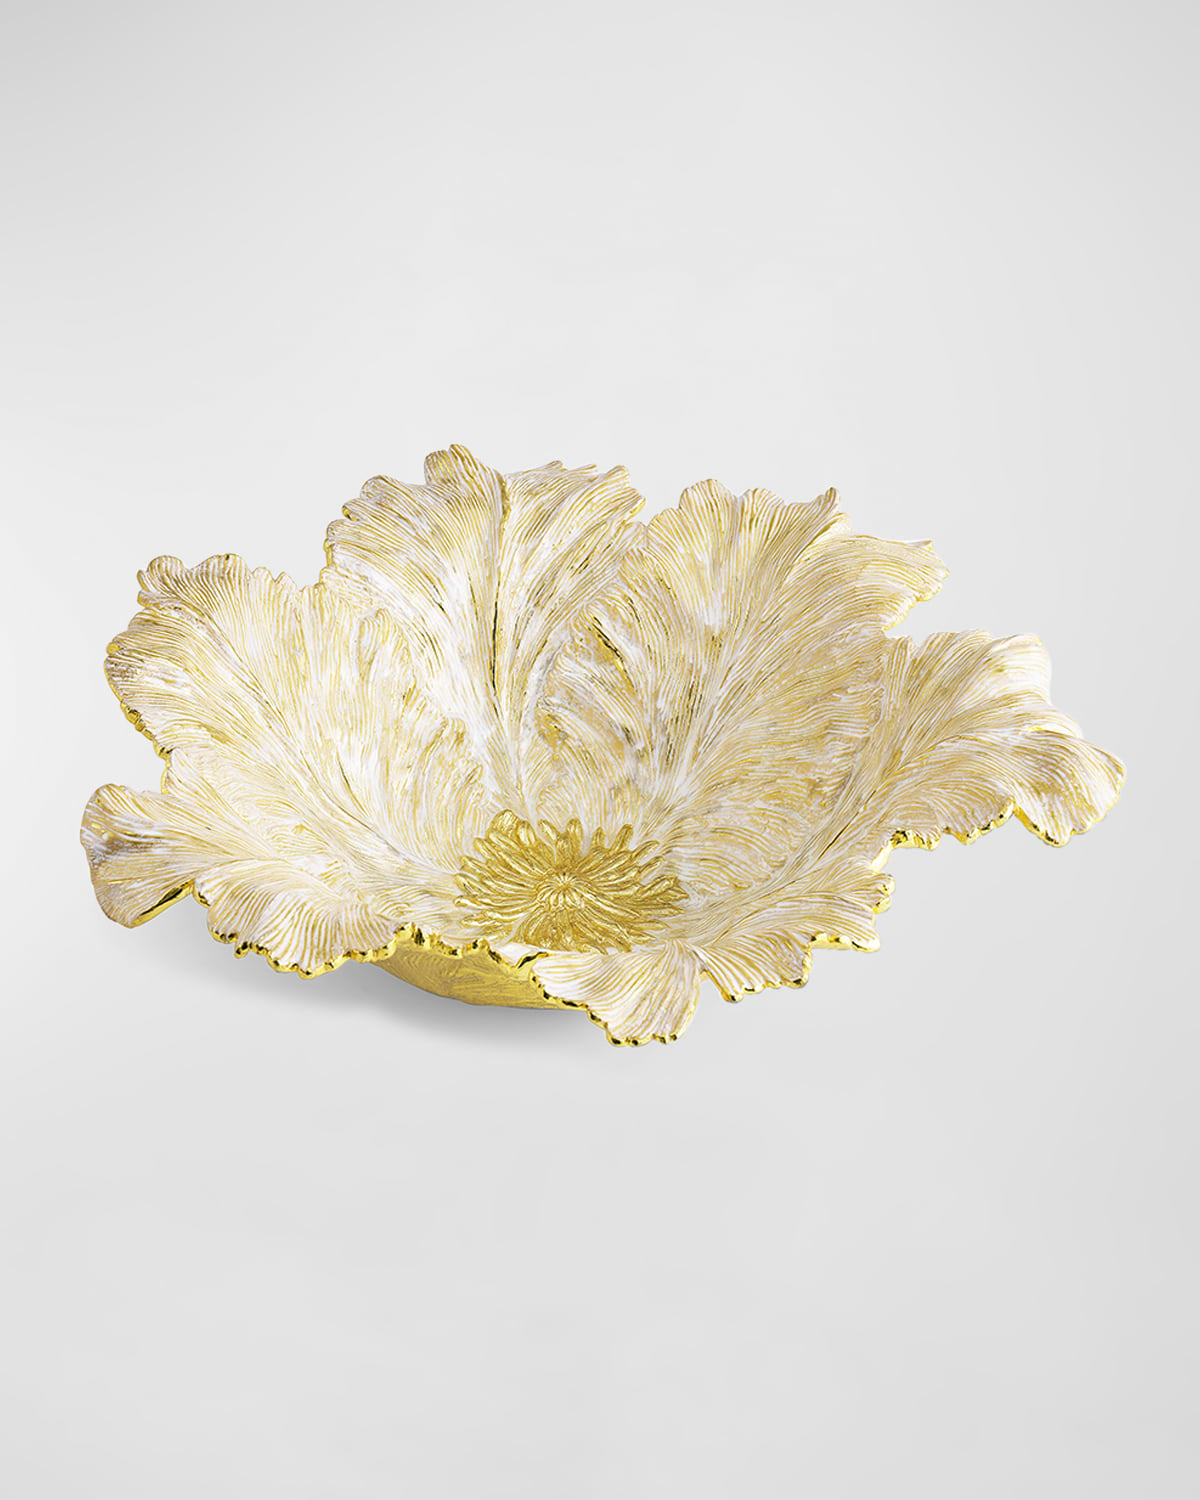 Michael Aram Tulip Centerpiece | Neiman Marcus